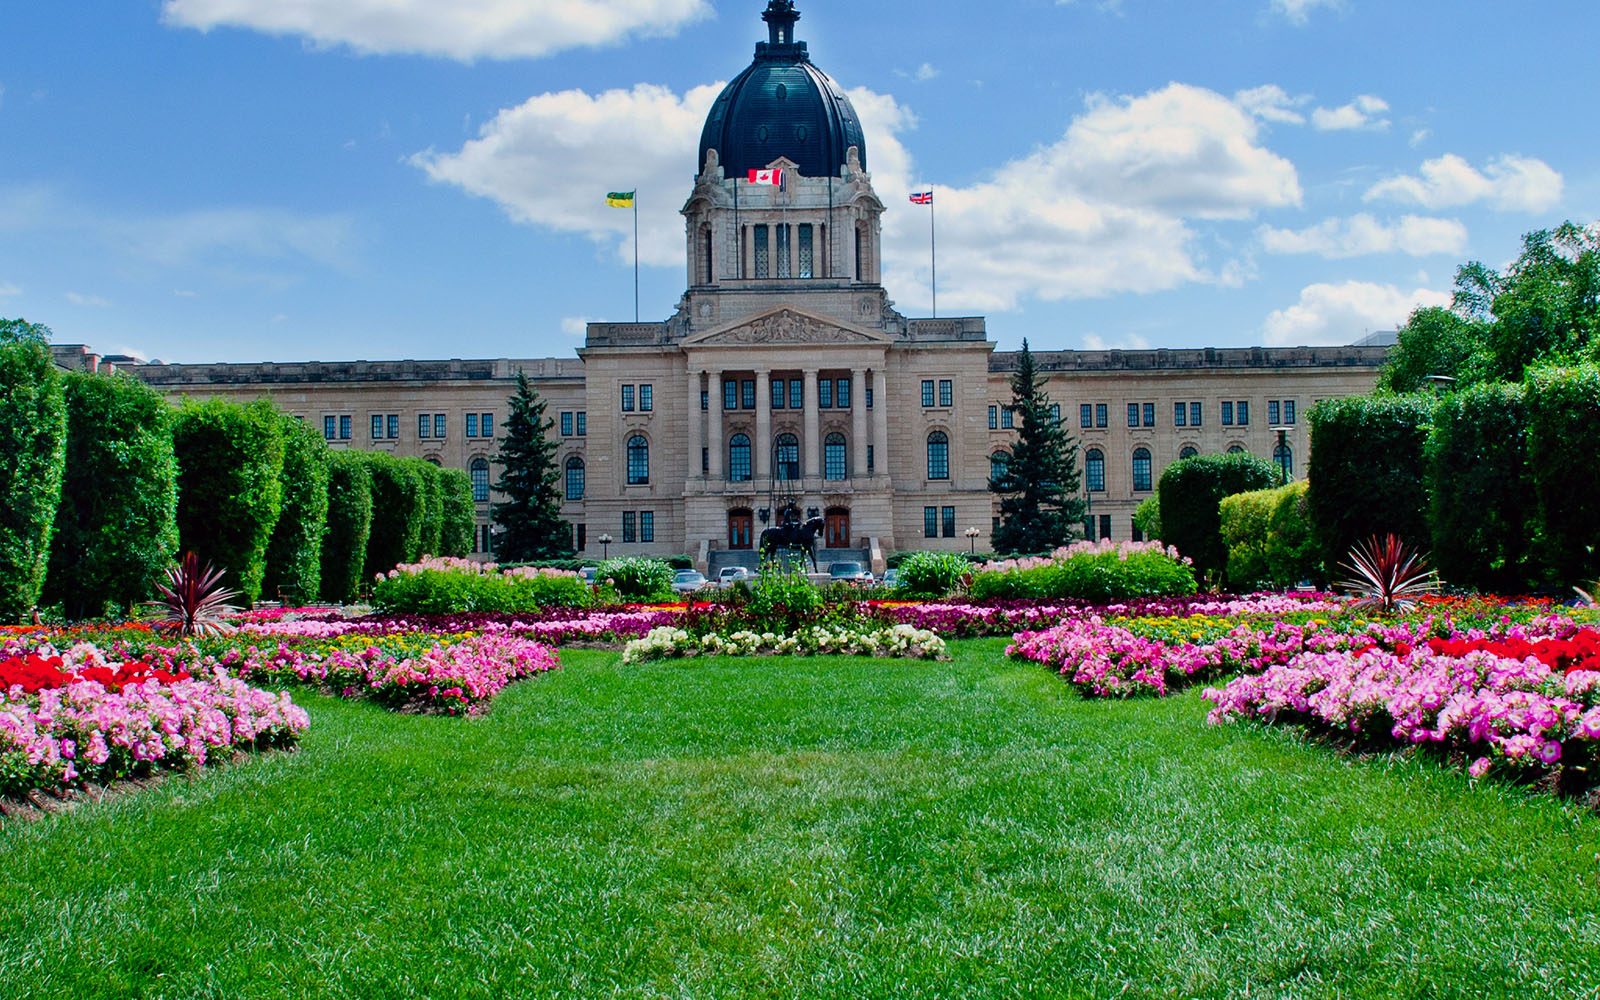 Saskatchewan parliament building